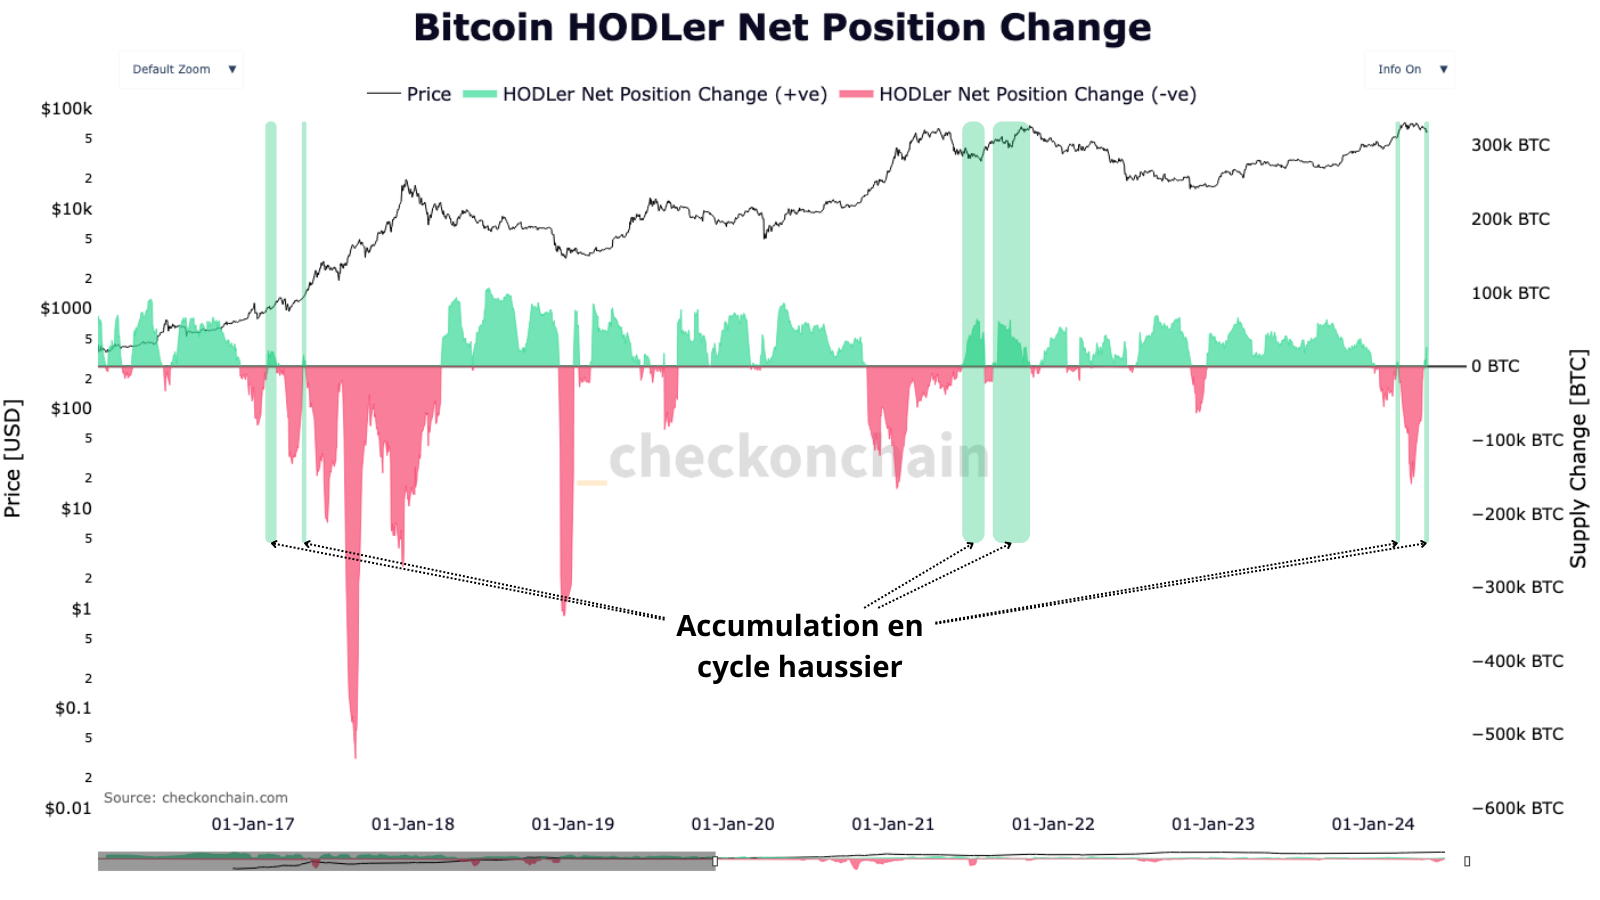 Les investisseurs long-terme, dit "hodlers", accumulent aussi en période de cycle haussier, on le voit lors des cycles de 2107 et 2021 que malgré la hausse du prix du Bitcoin, ils accumulent lors des corrections majeures.